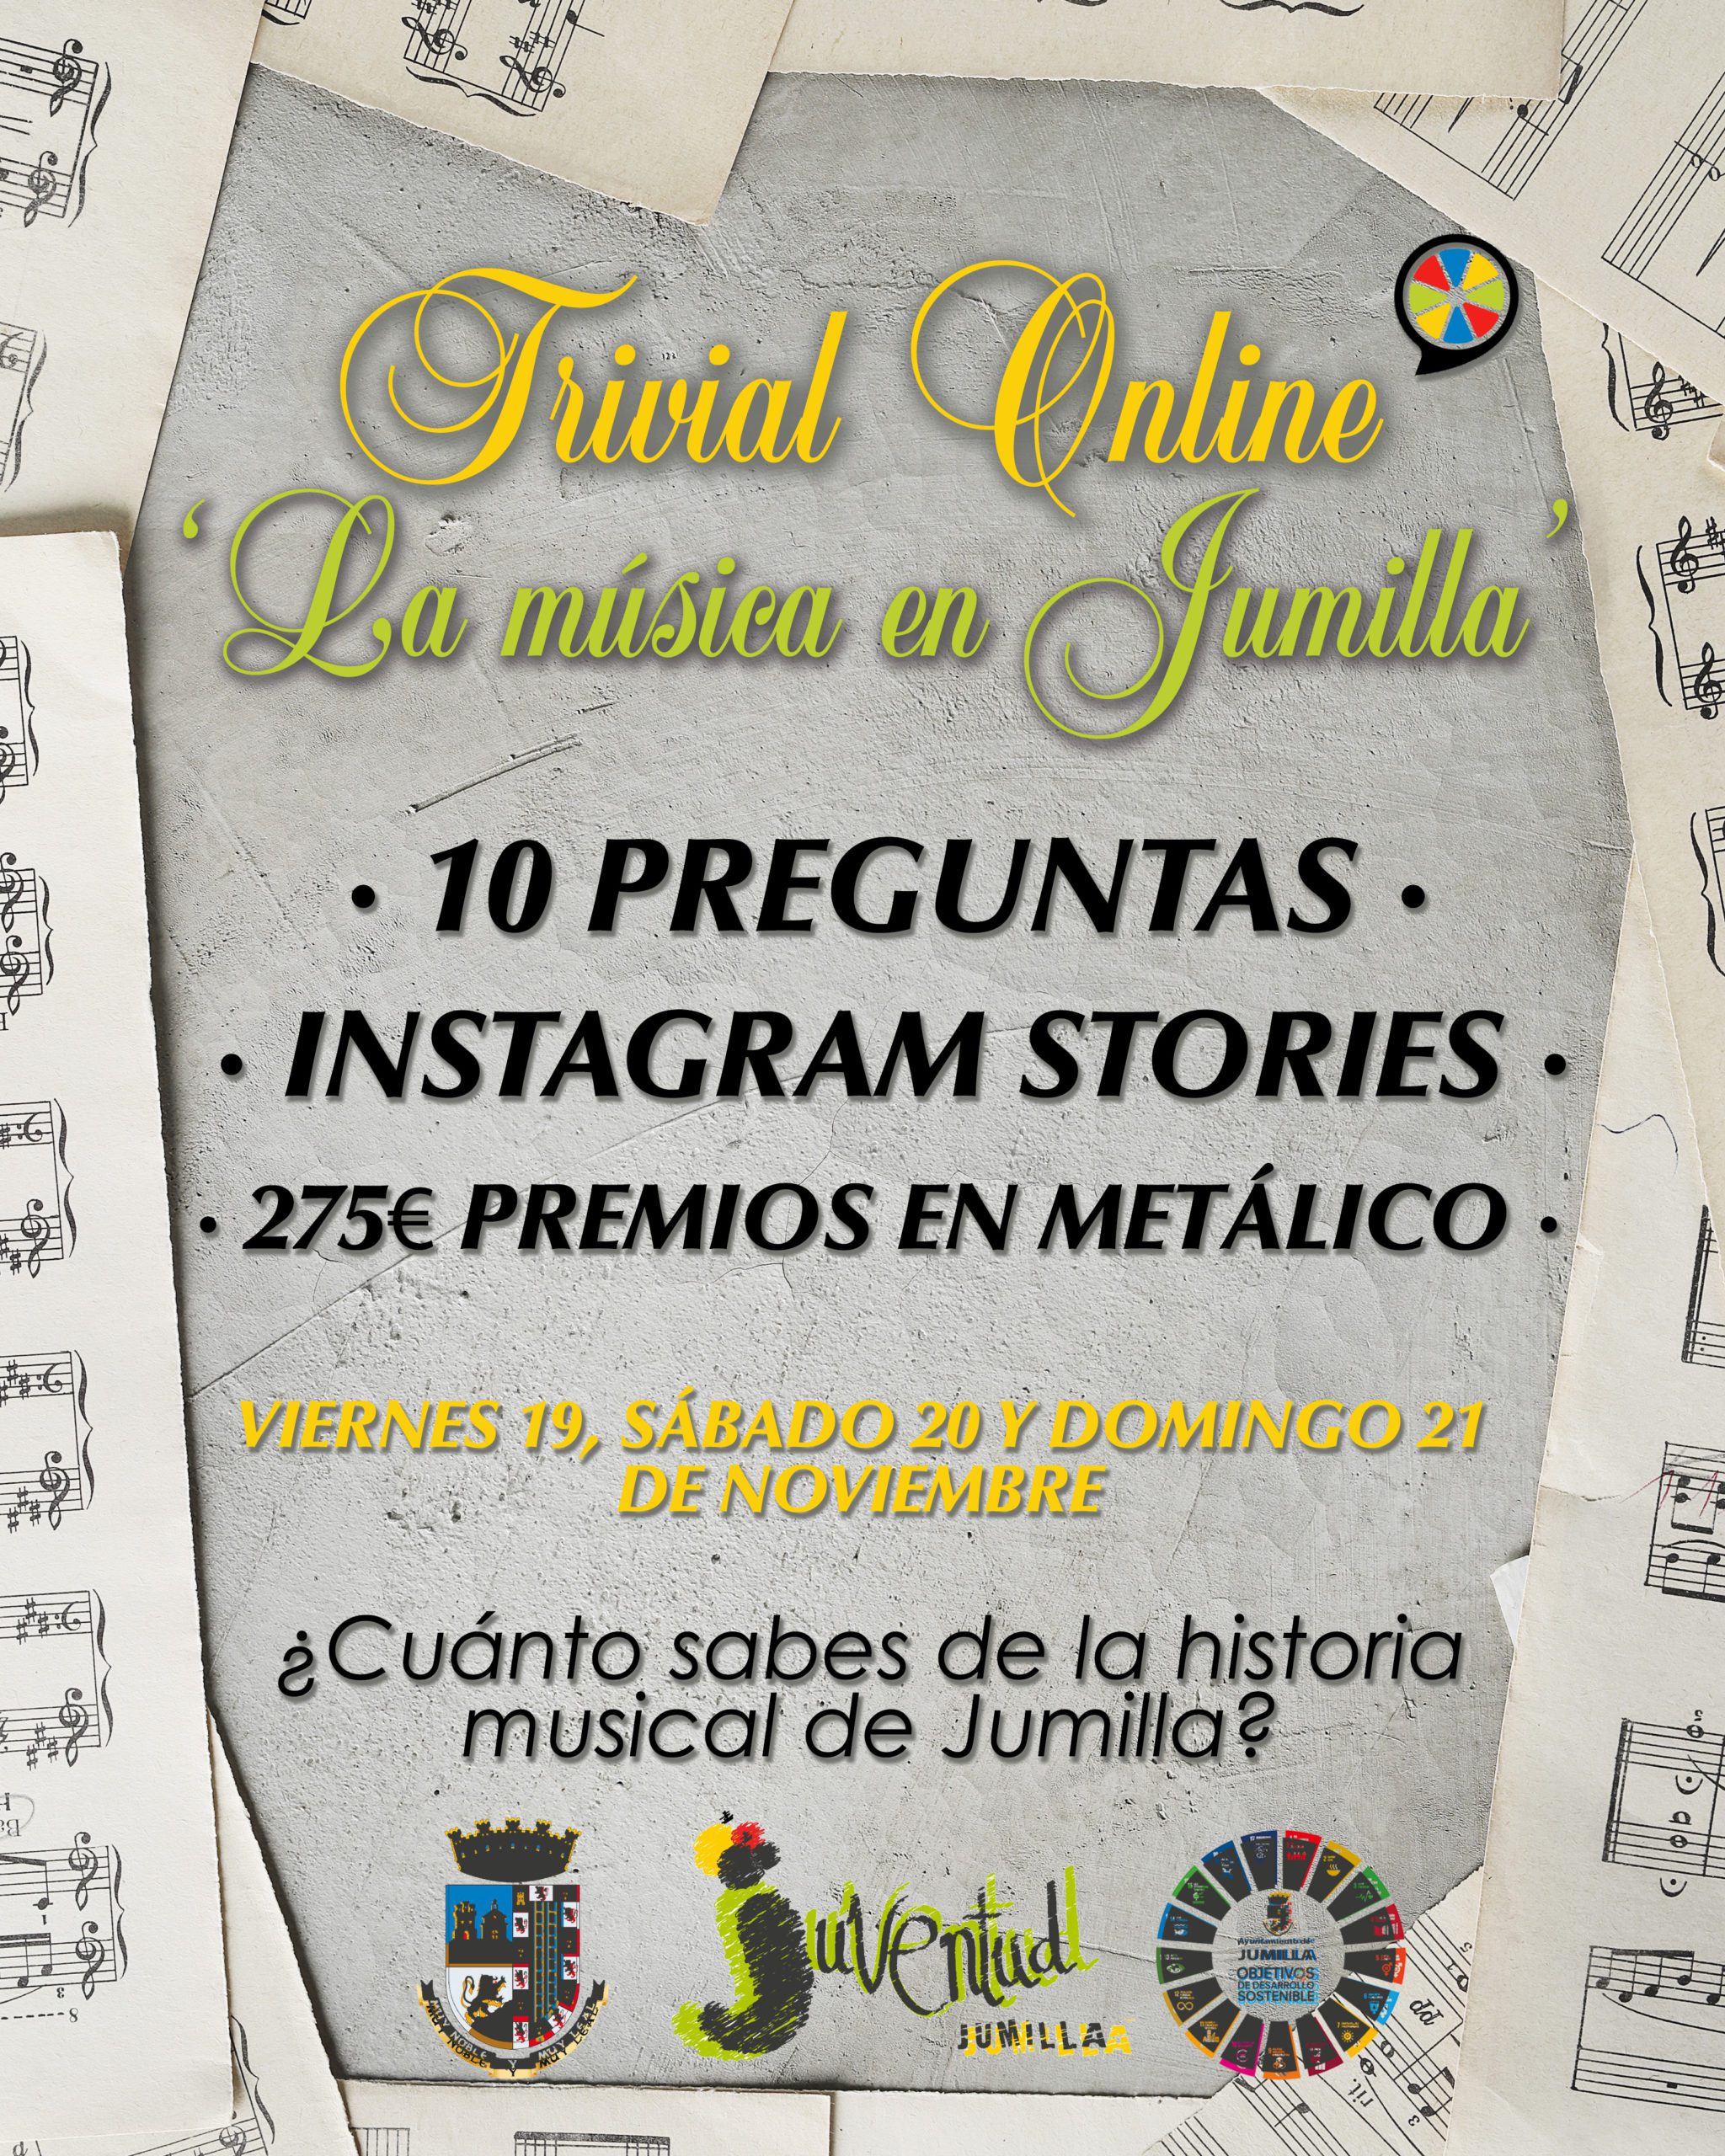 Juventud organiza un trivial en Instagram sobre la historia de la música en Jumilla